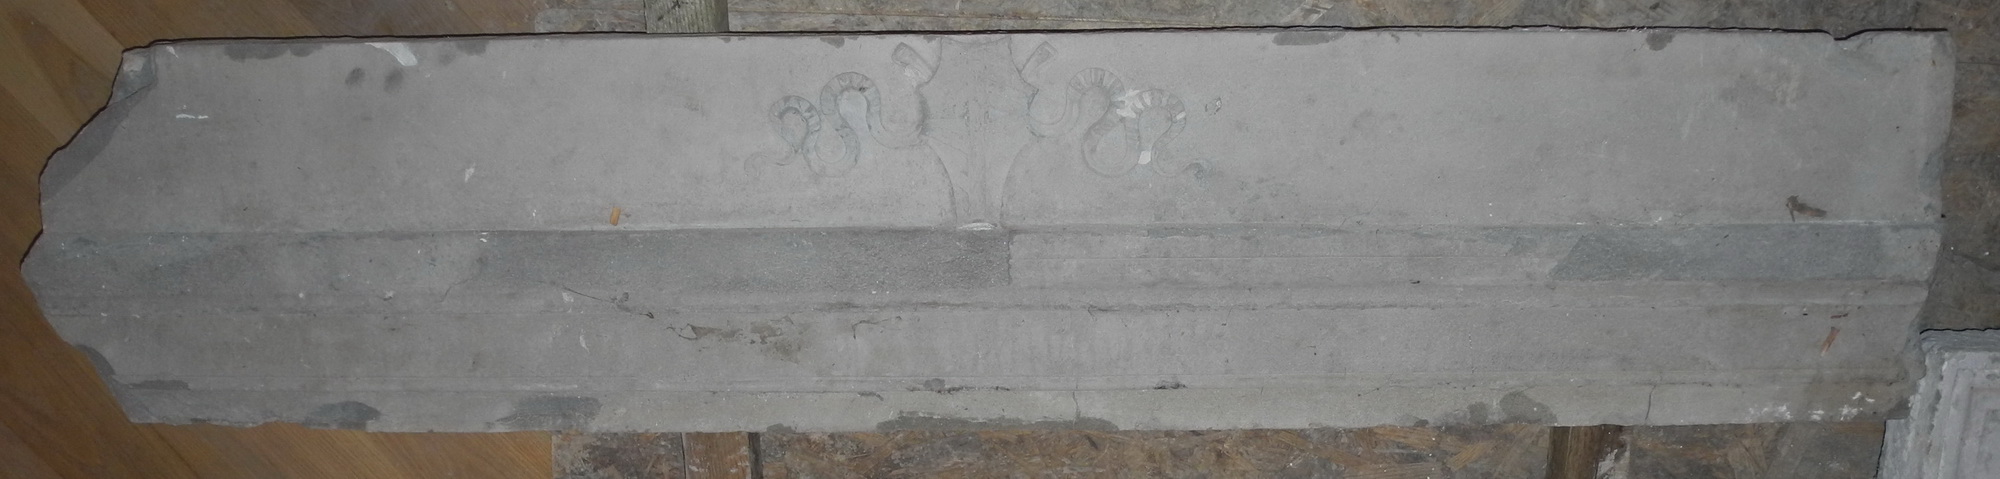 stemma gentilizio di Federico da Montefeltro (architrave di caminetto, frammento) di Martini Francesco di Giorgio (attribuito) - ambito Italia centrale (seconda metà sec. XV)